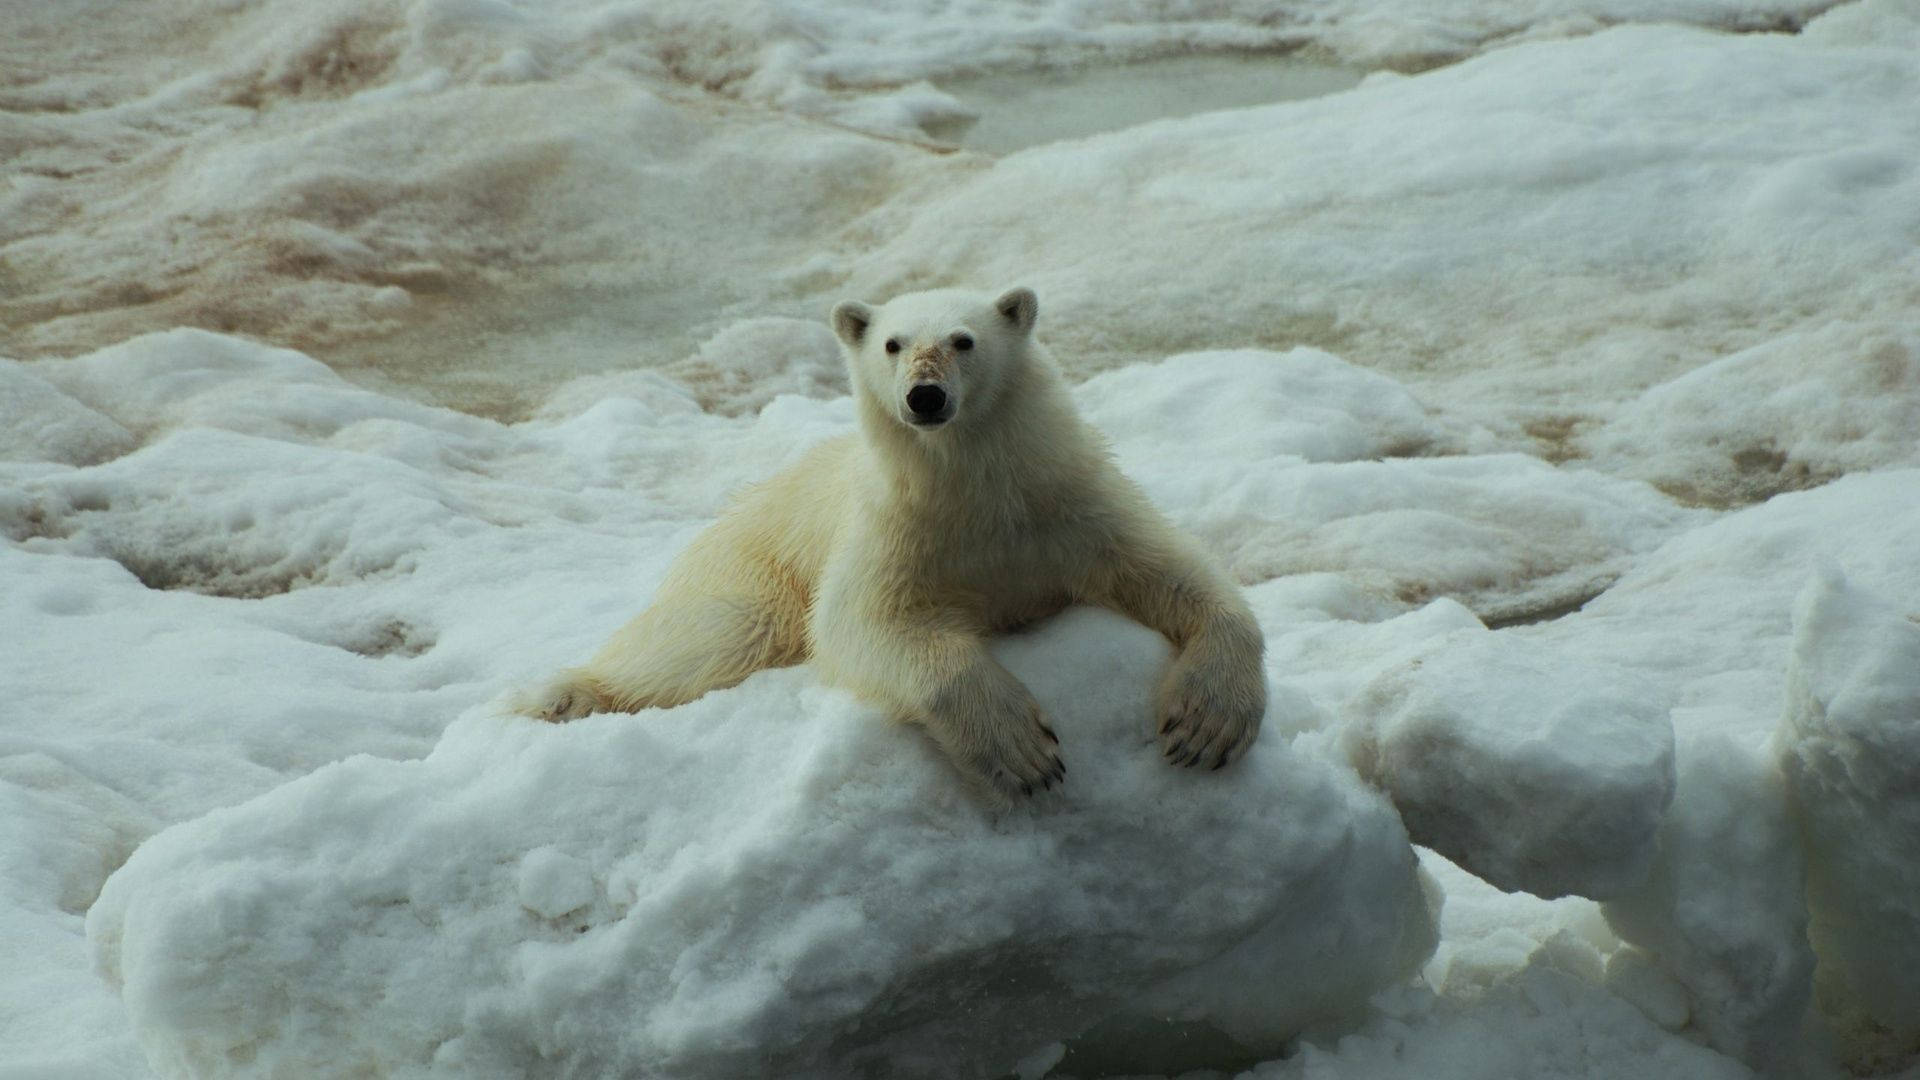 Polar Bear On A Snowy Floor